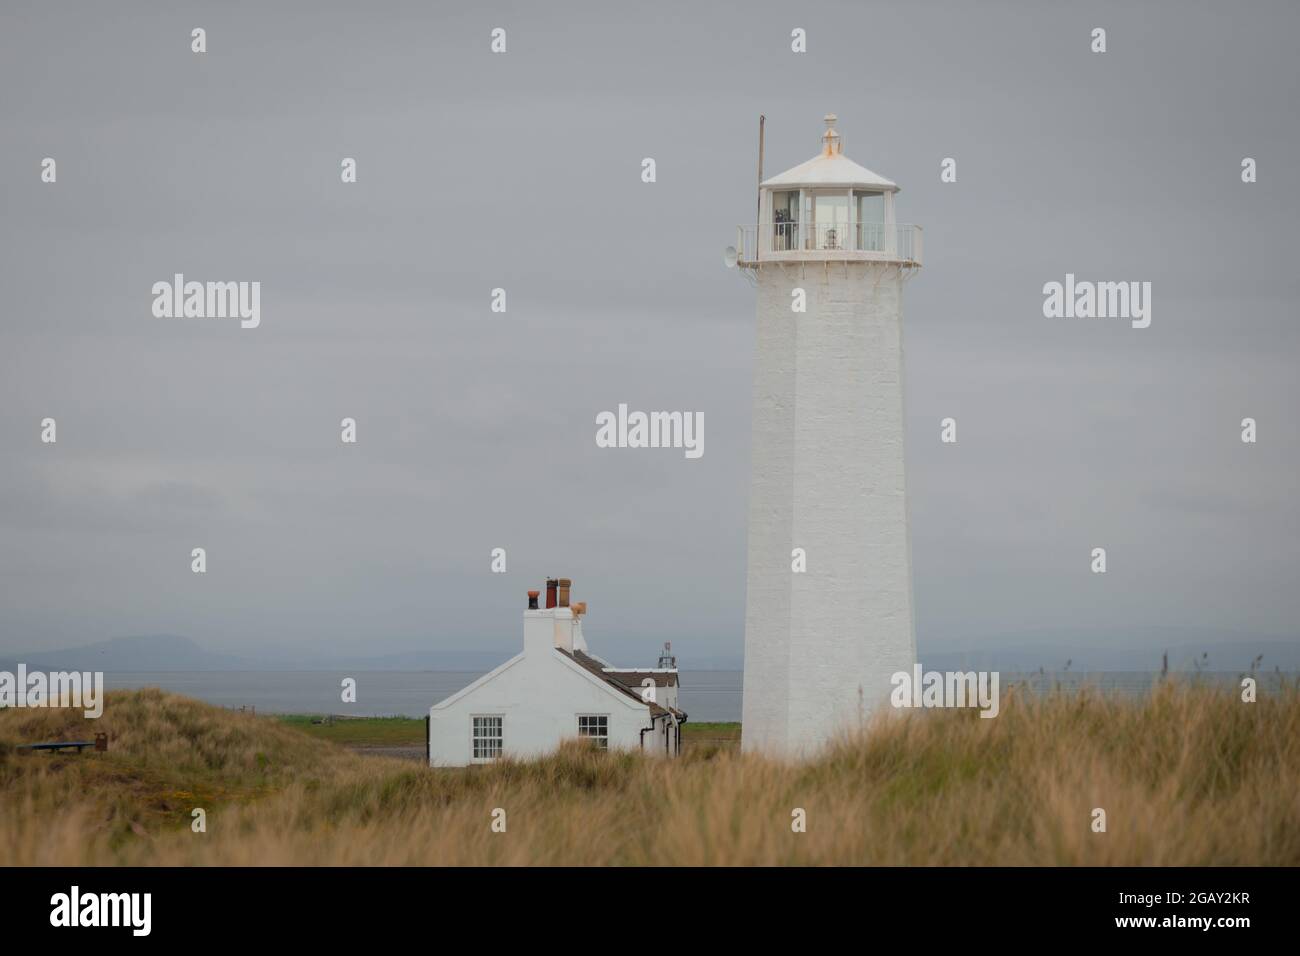 Le phare de Walney et le cottage sur l'île de Walney dans les prairies au bord de la mer d'Irlande Banque D'Images